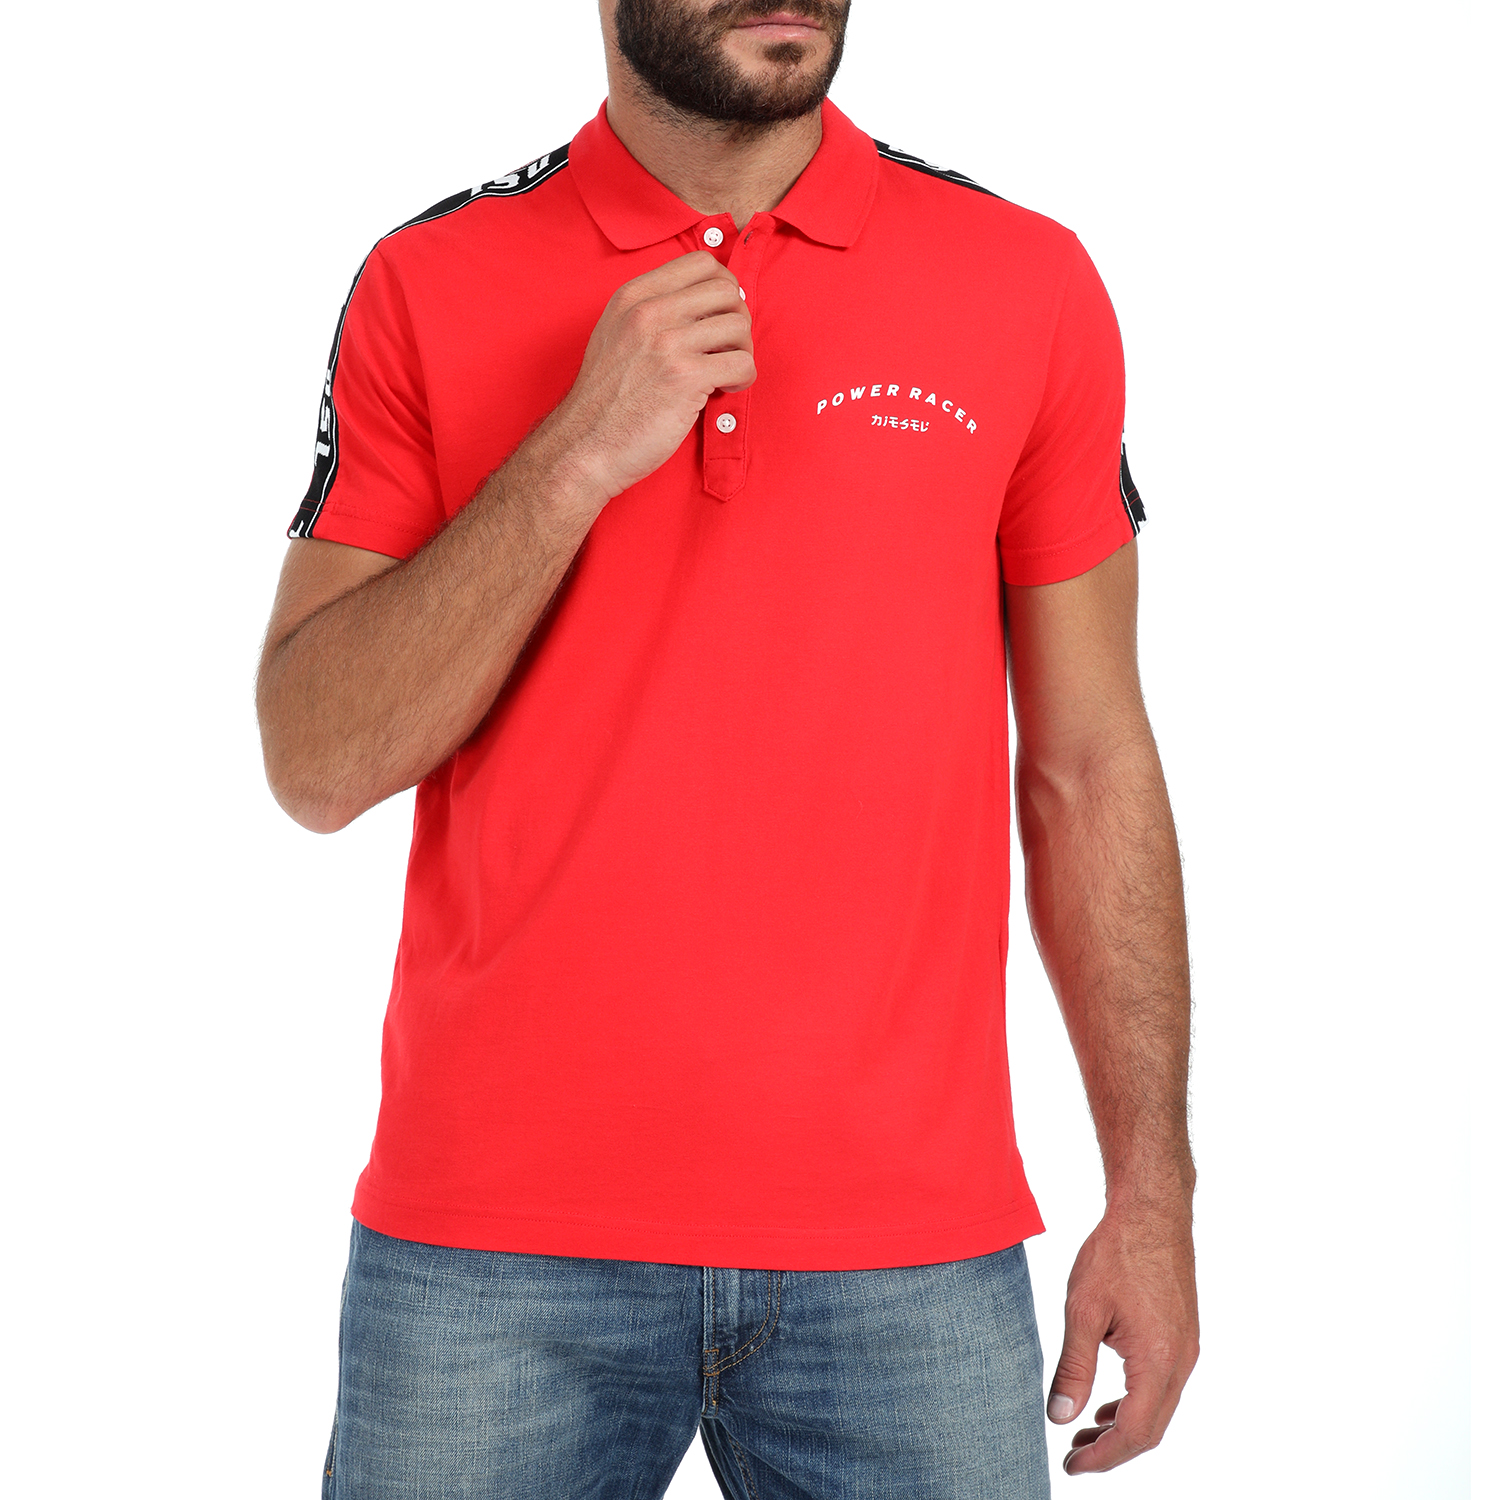 Ανδρικά/Ρούχα/Μπλούζες/Πόλο DIESEL - Ανδρική polo μπλούζα DIESEL T-GOROU POLO κόκκινη